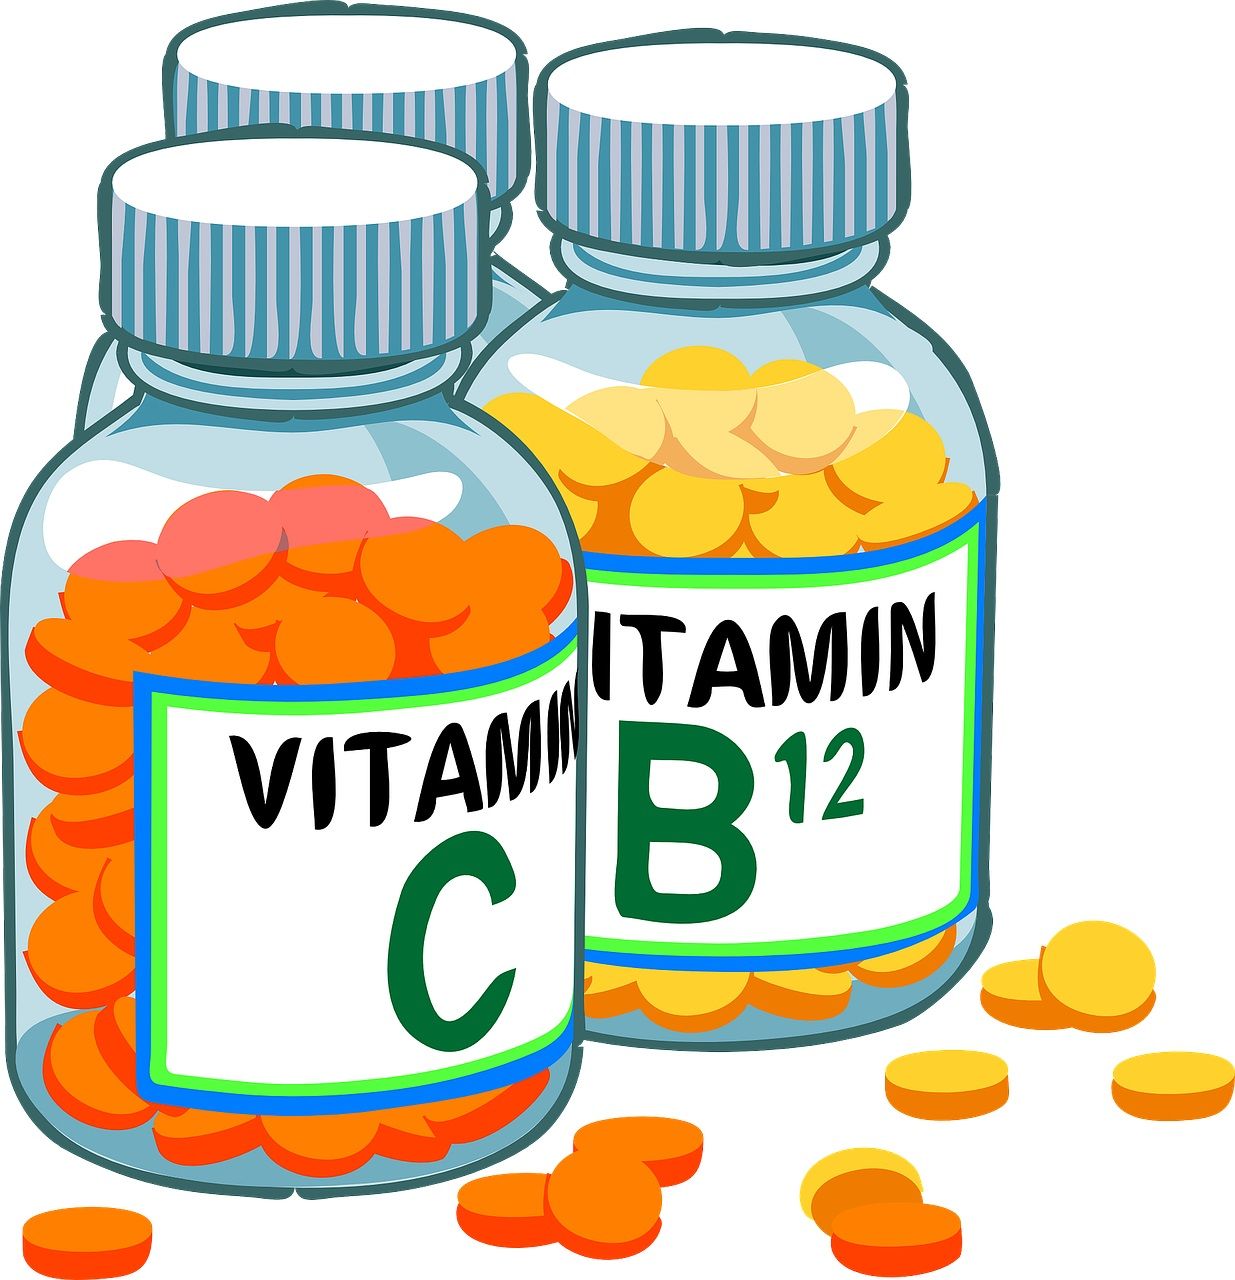 Două vitamine importante, asociate cu risc crescut de fractură de șold